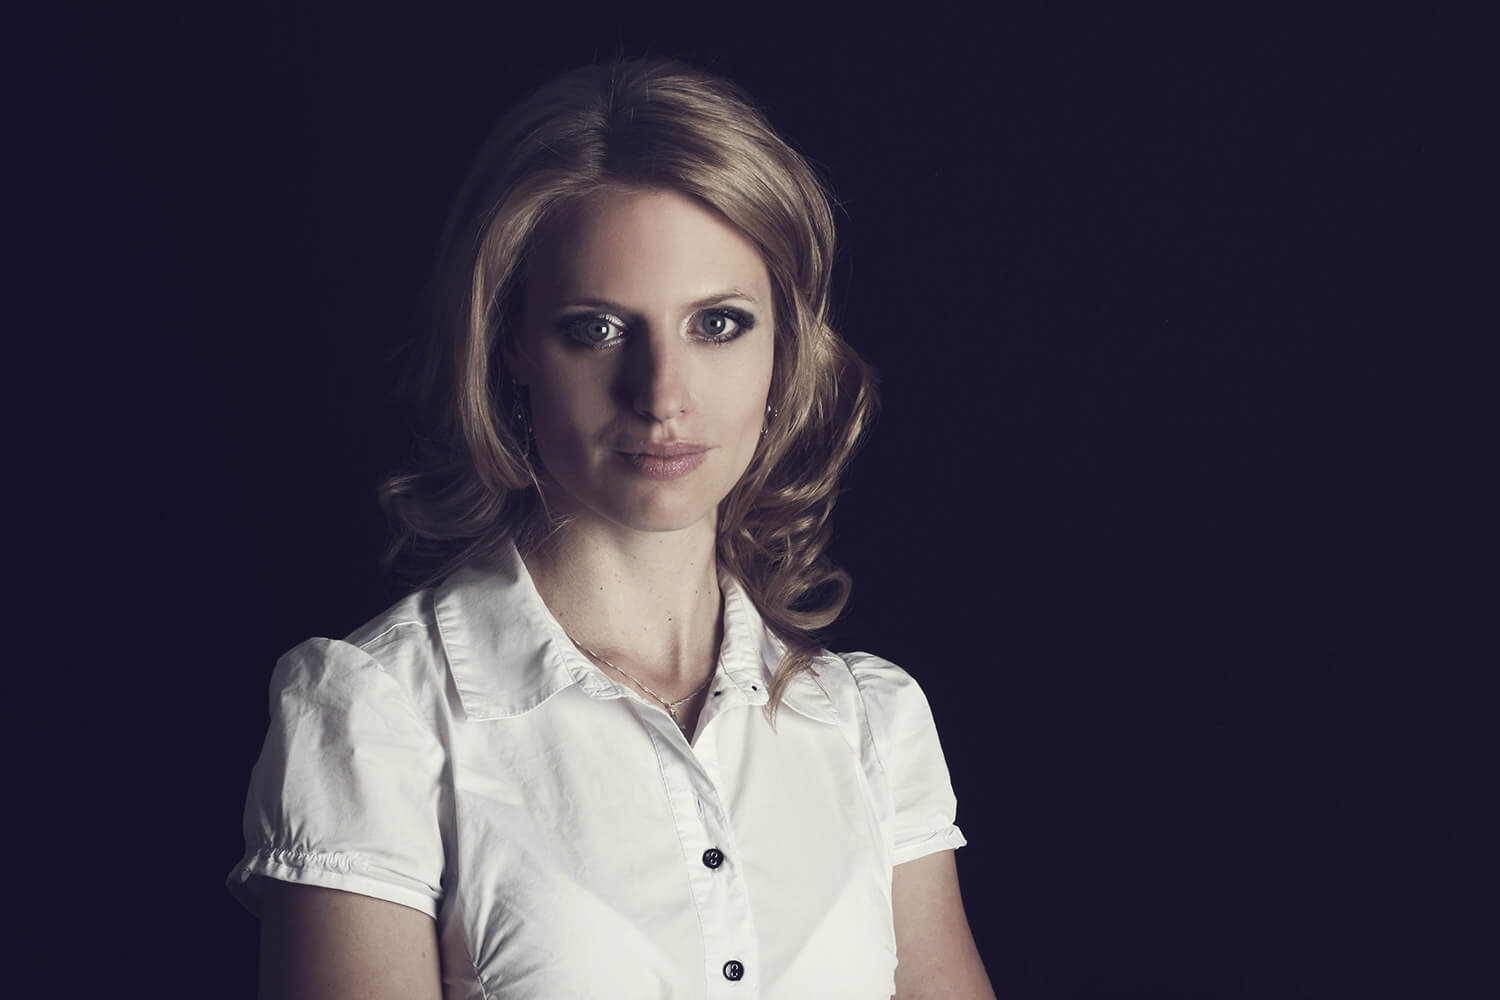 ženský business portrét v bílé košili na tmavém pozadí